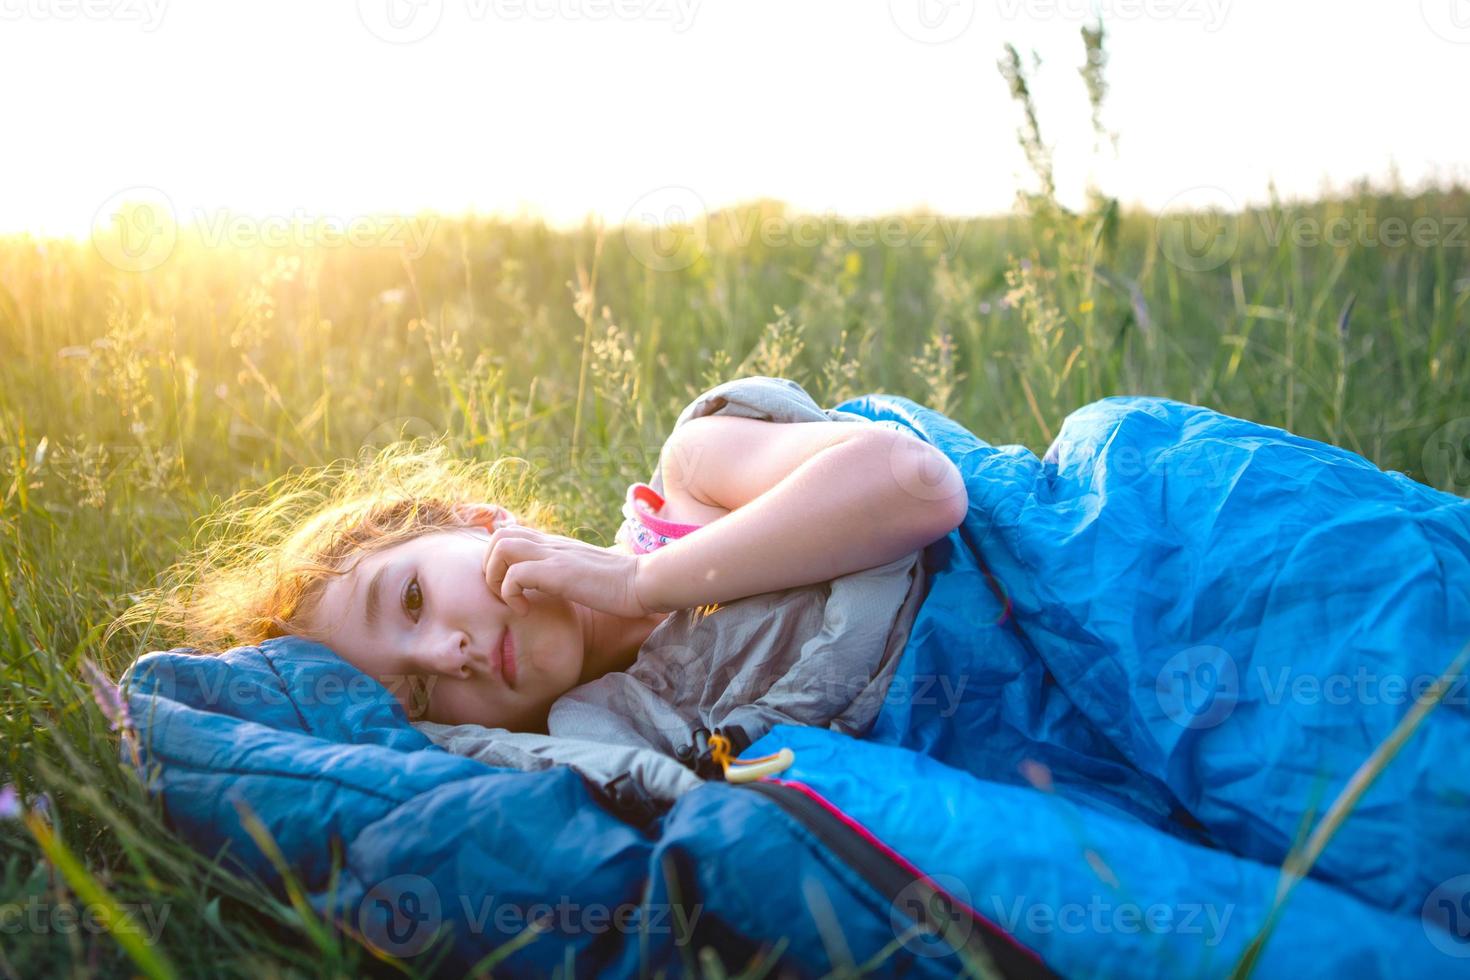 Das Mädchen ist unzufrieden mit kratzenden Mückenstichen, das Kind schläft bei einem Campingausflug in einem Schlafsack auf dem Gras. umweltfreundliche erholung im freien, sommerzeit. Schlafstörung, abweisend. foto